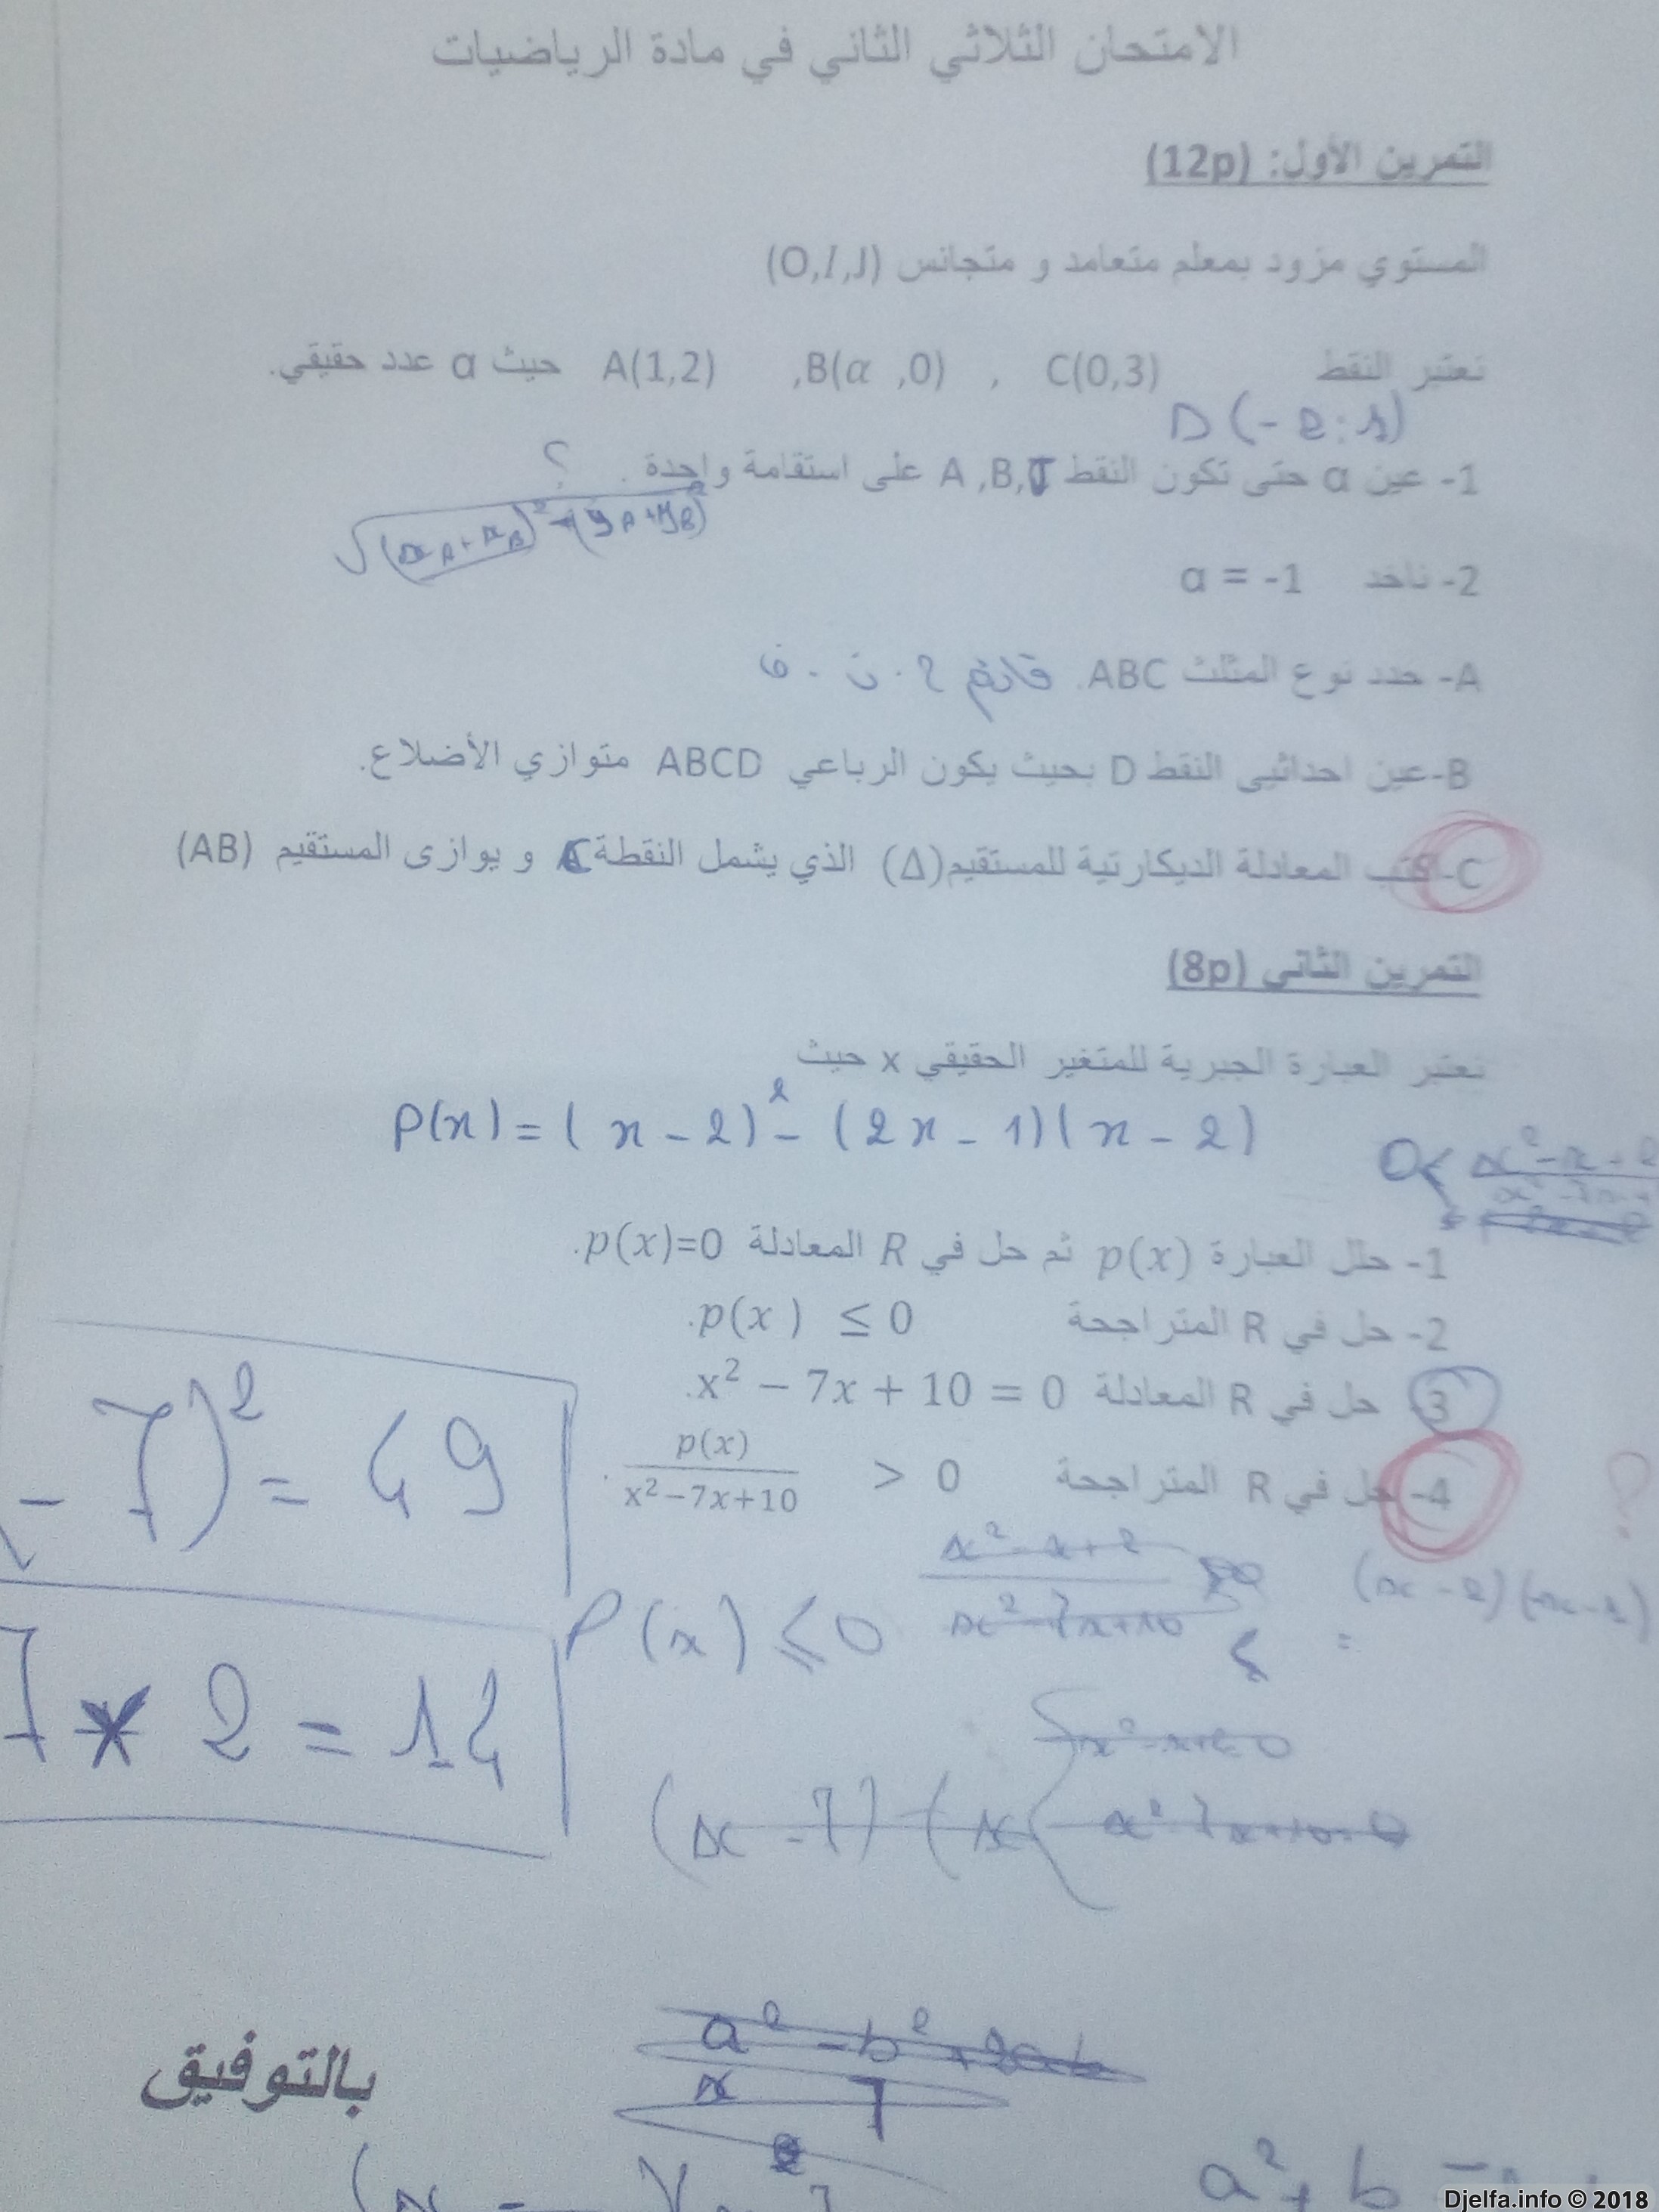 الصفحــة الرسمــية لمراجعة مادة الرياضيات للسنة أولى ثانوي إن شــآء الله  - صفحة 2 152027887434891